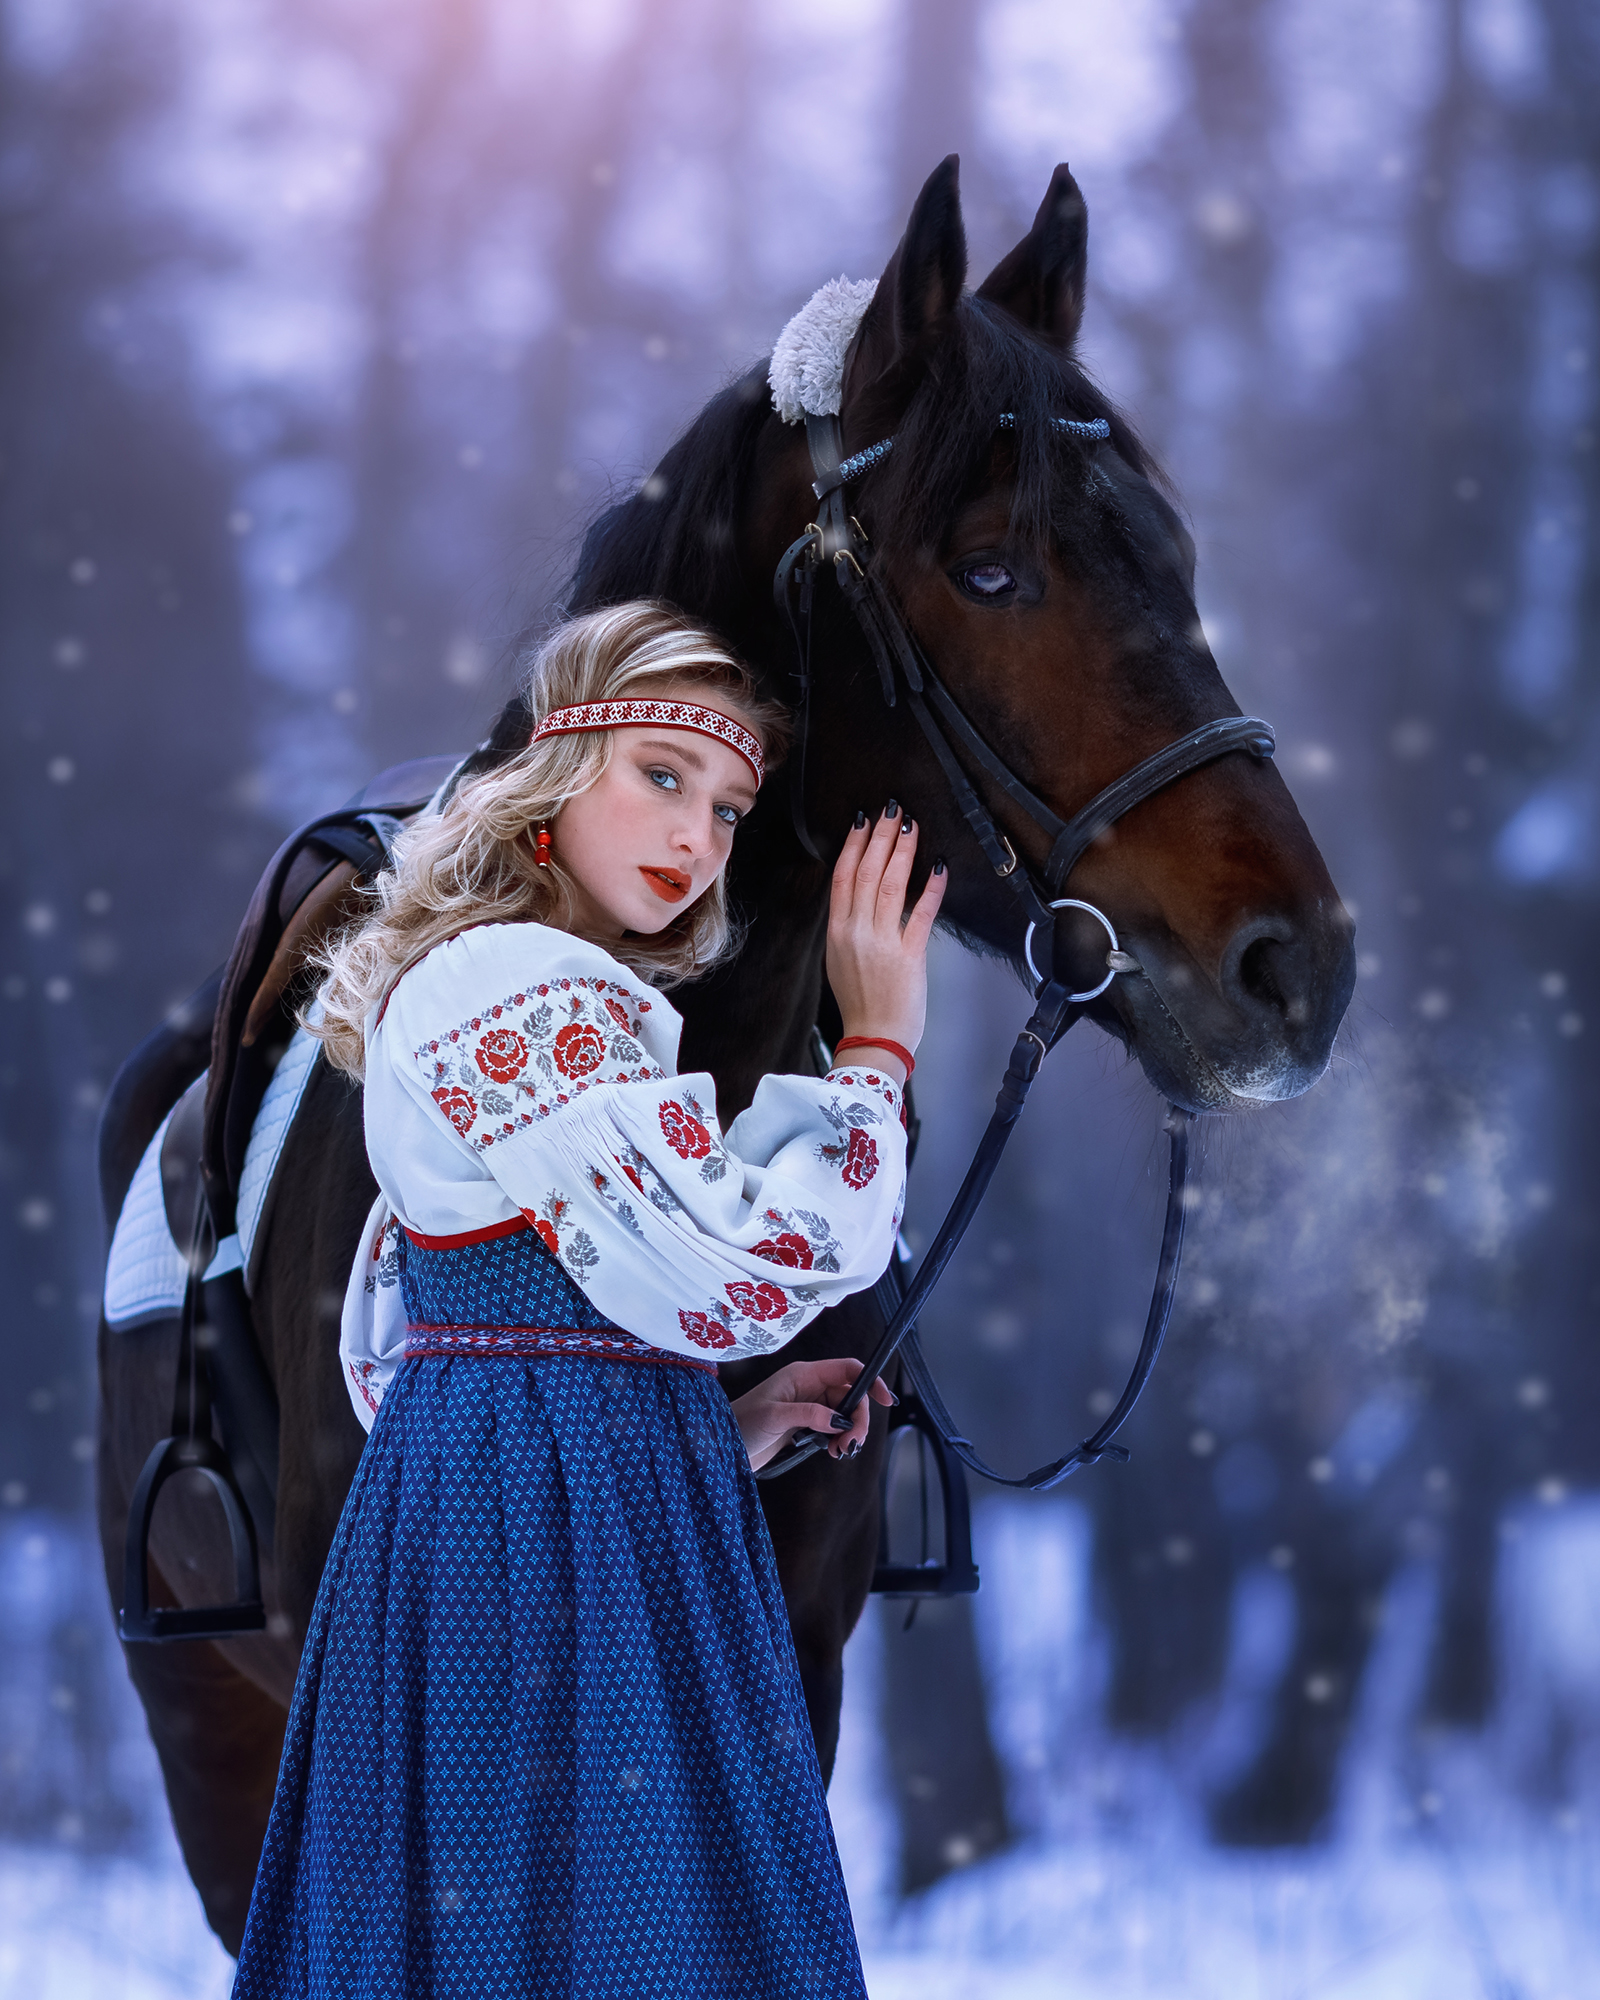 portrait, woman, canon, девушка, портрет, женский портрет, лошади, художественная фотография, Надя Бикетская